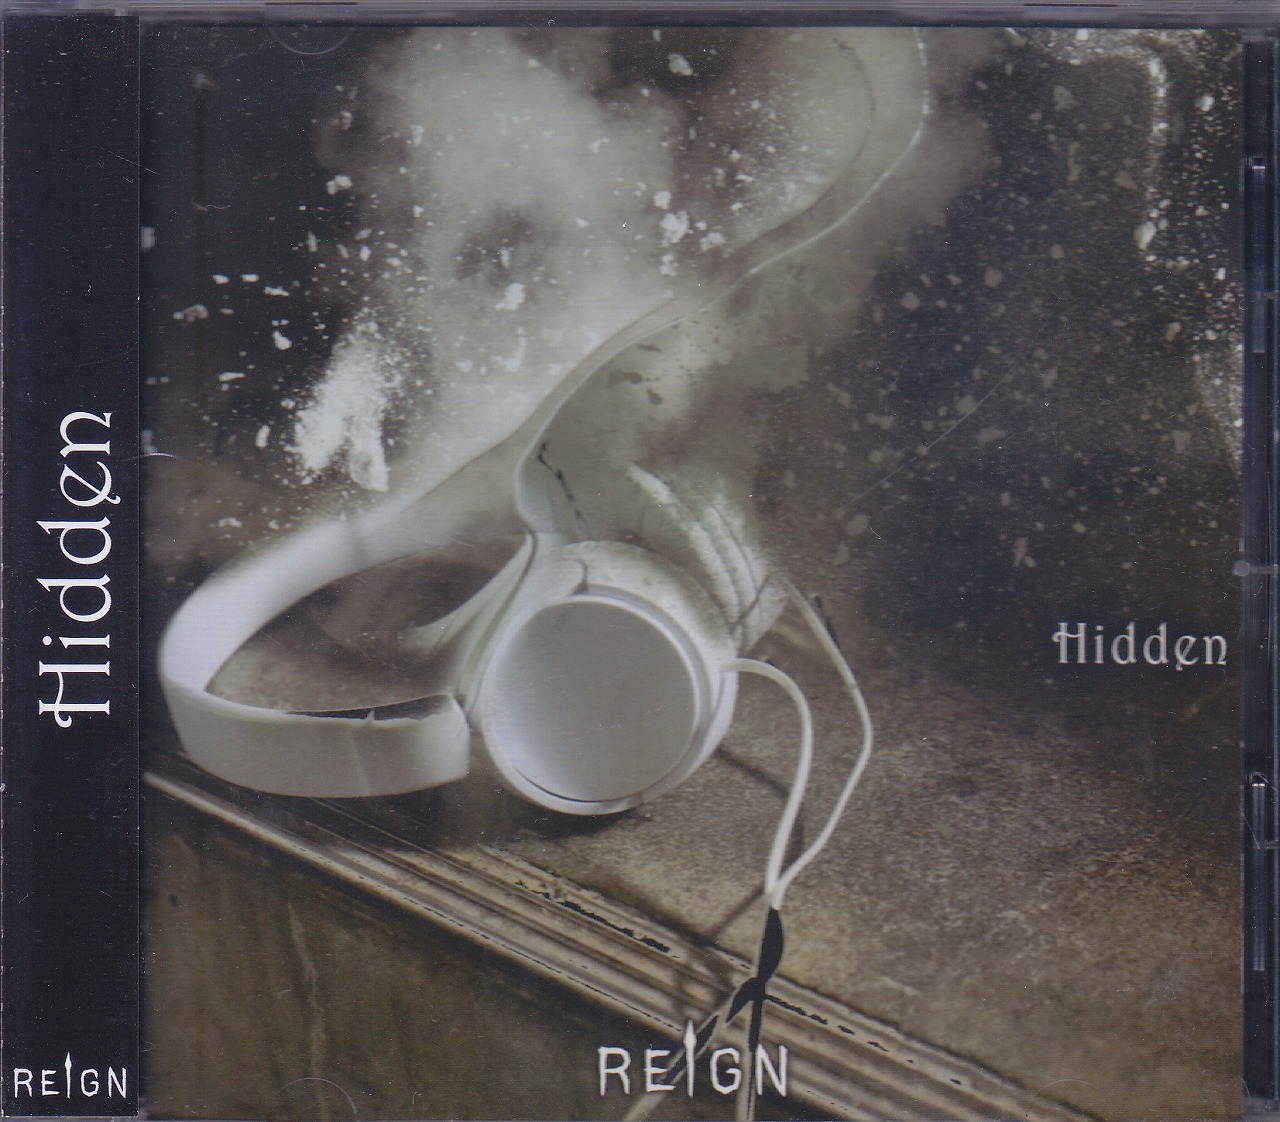 レイン の CD 【通常盤】Hidden